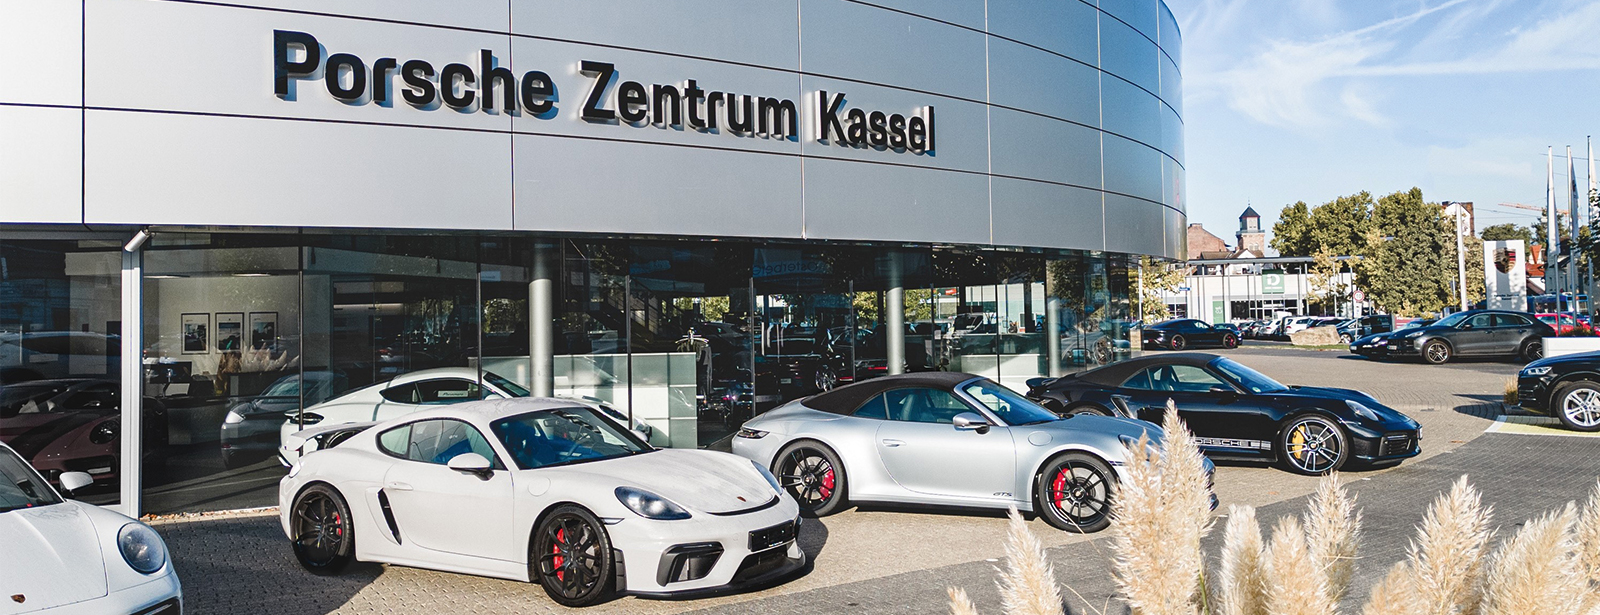 Herzlich willkommen » Porsche Zentrum Kassel